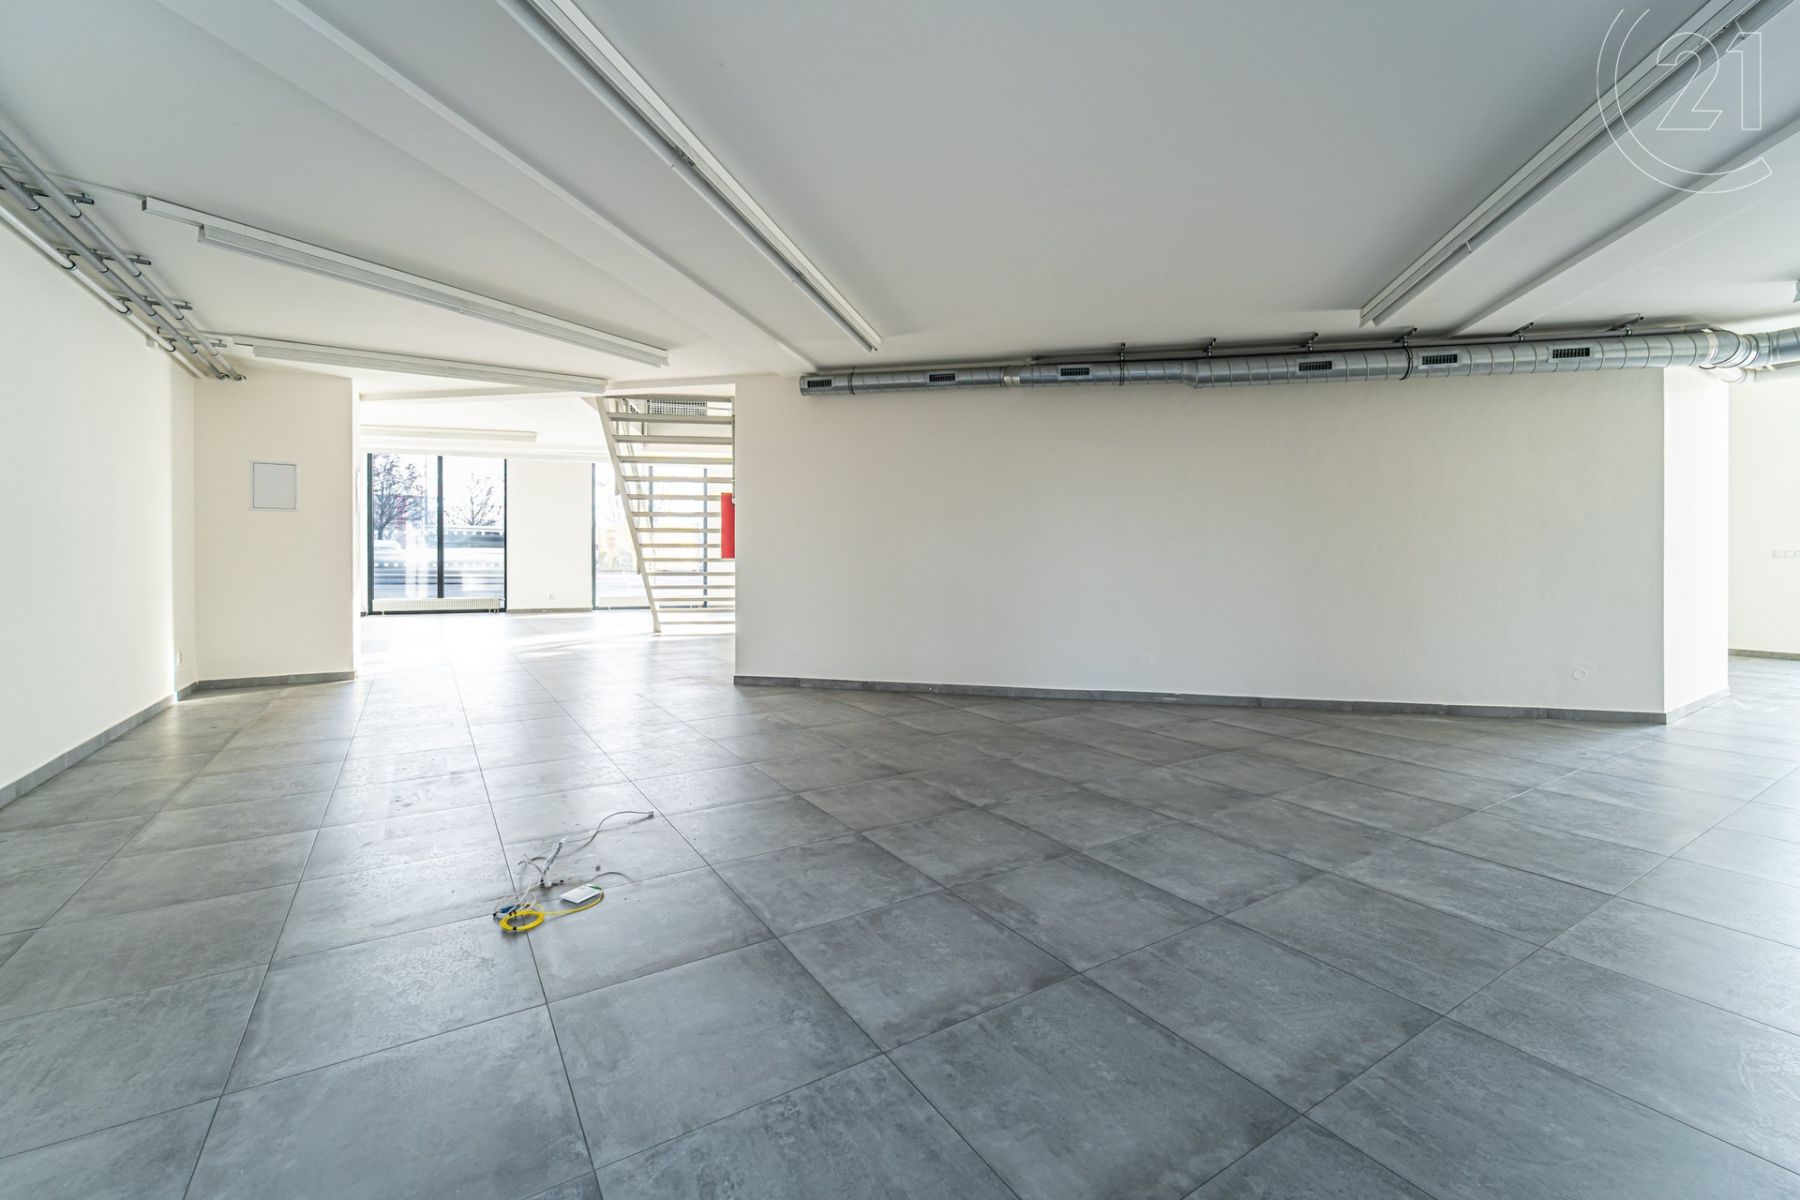 Kancelářské prostory ke koupi o celkové ploše 232m2 v rohovém domě na frekventované ulici Mlýnská v , obrázek č. 3